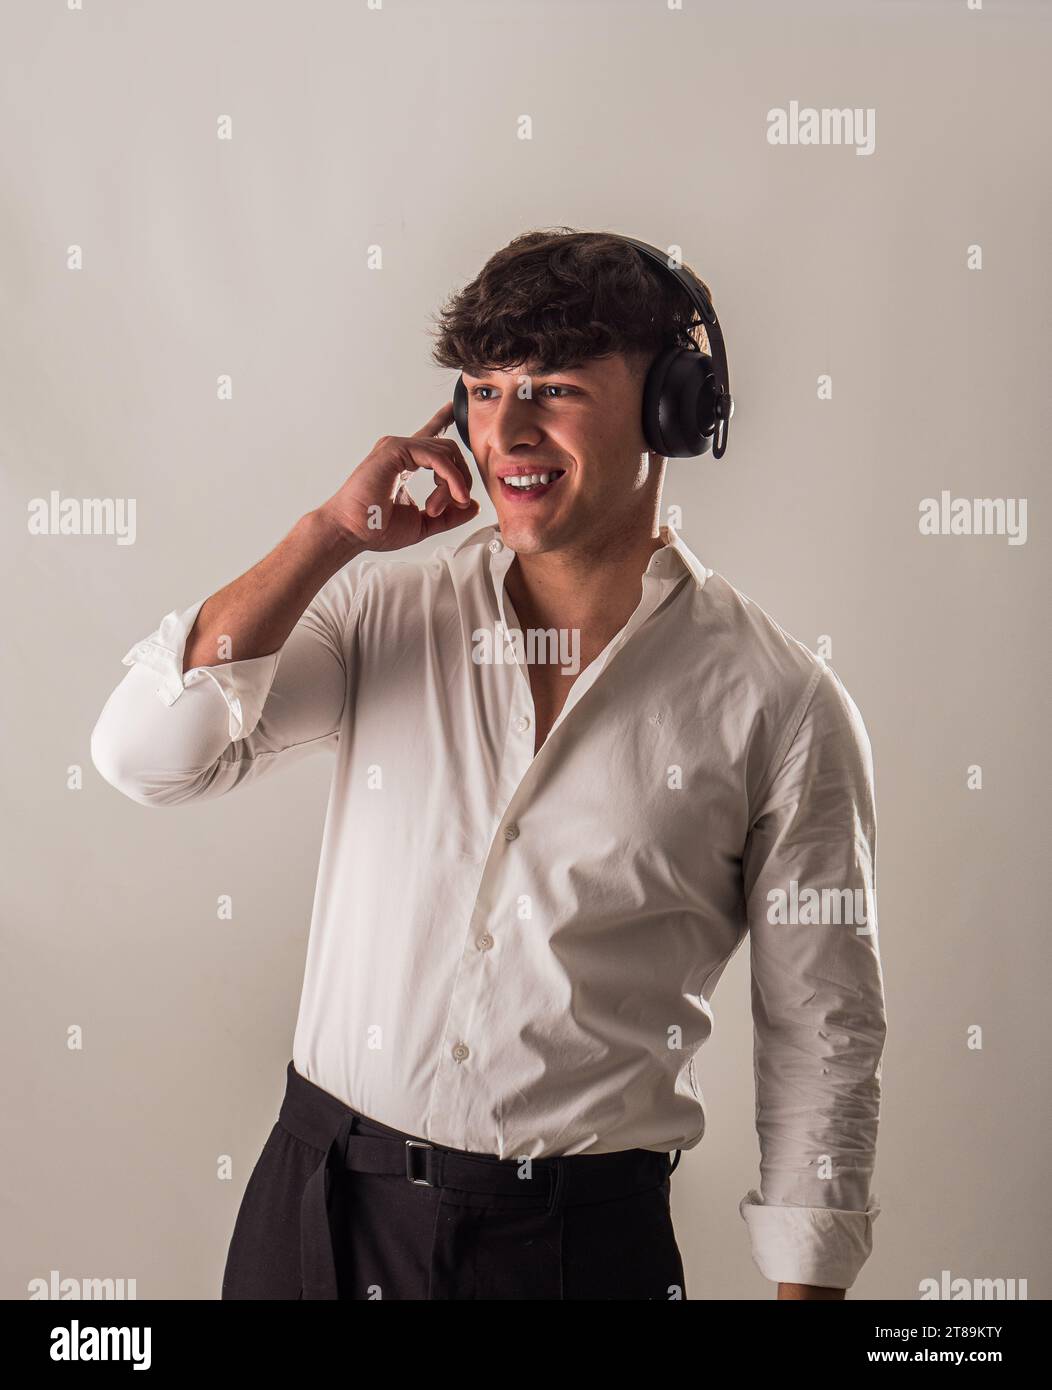 Un giovane e bello uomo con una camicia bianca sta ascoltando musica con le cuffie, in studio Foto Stock